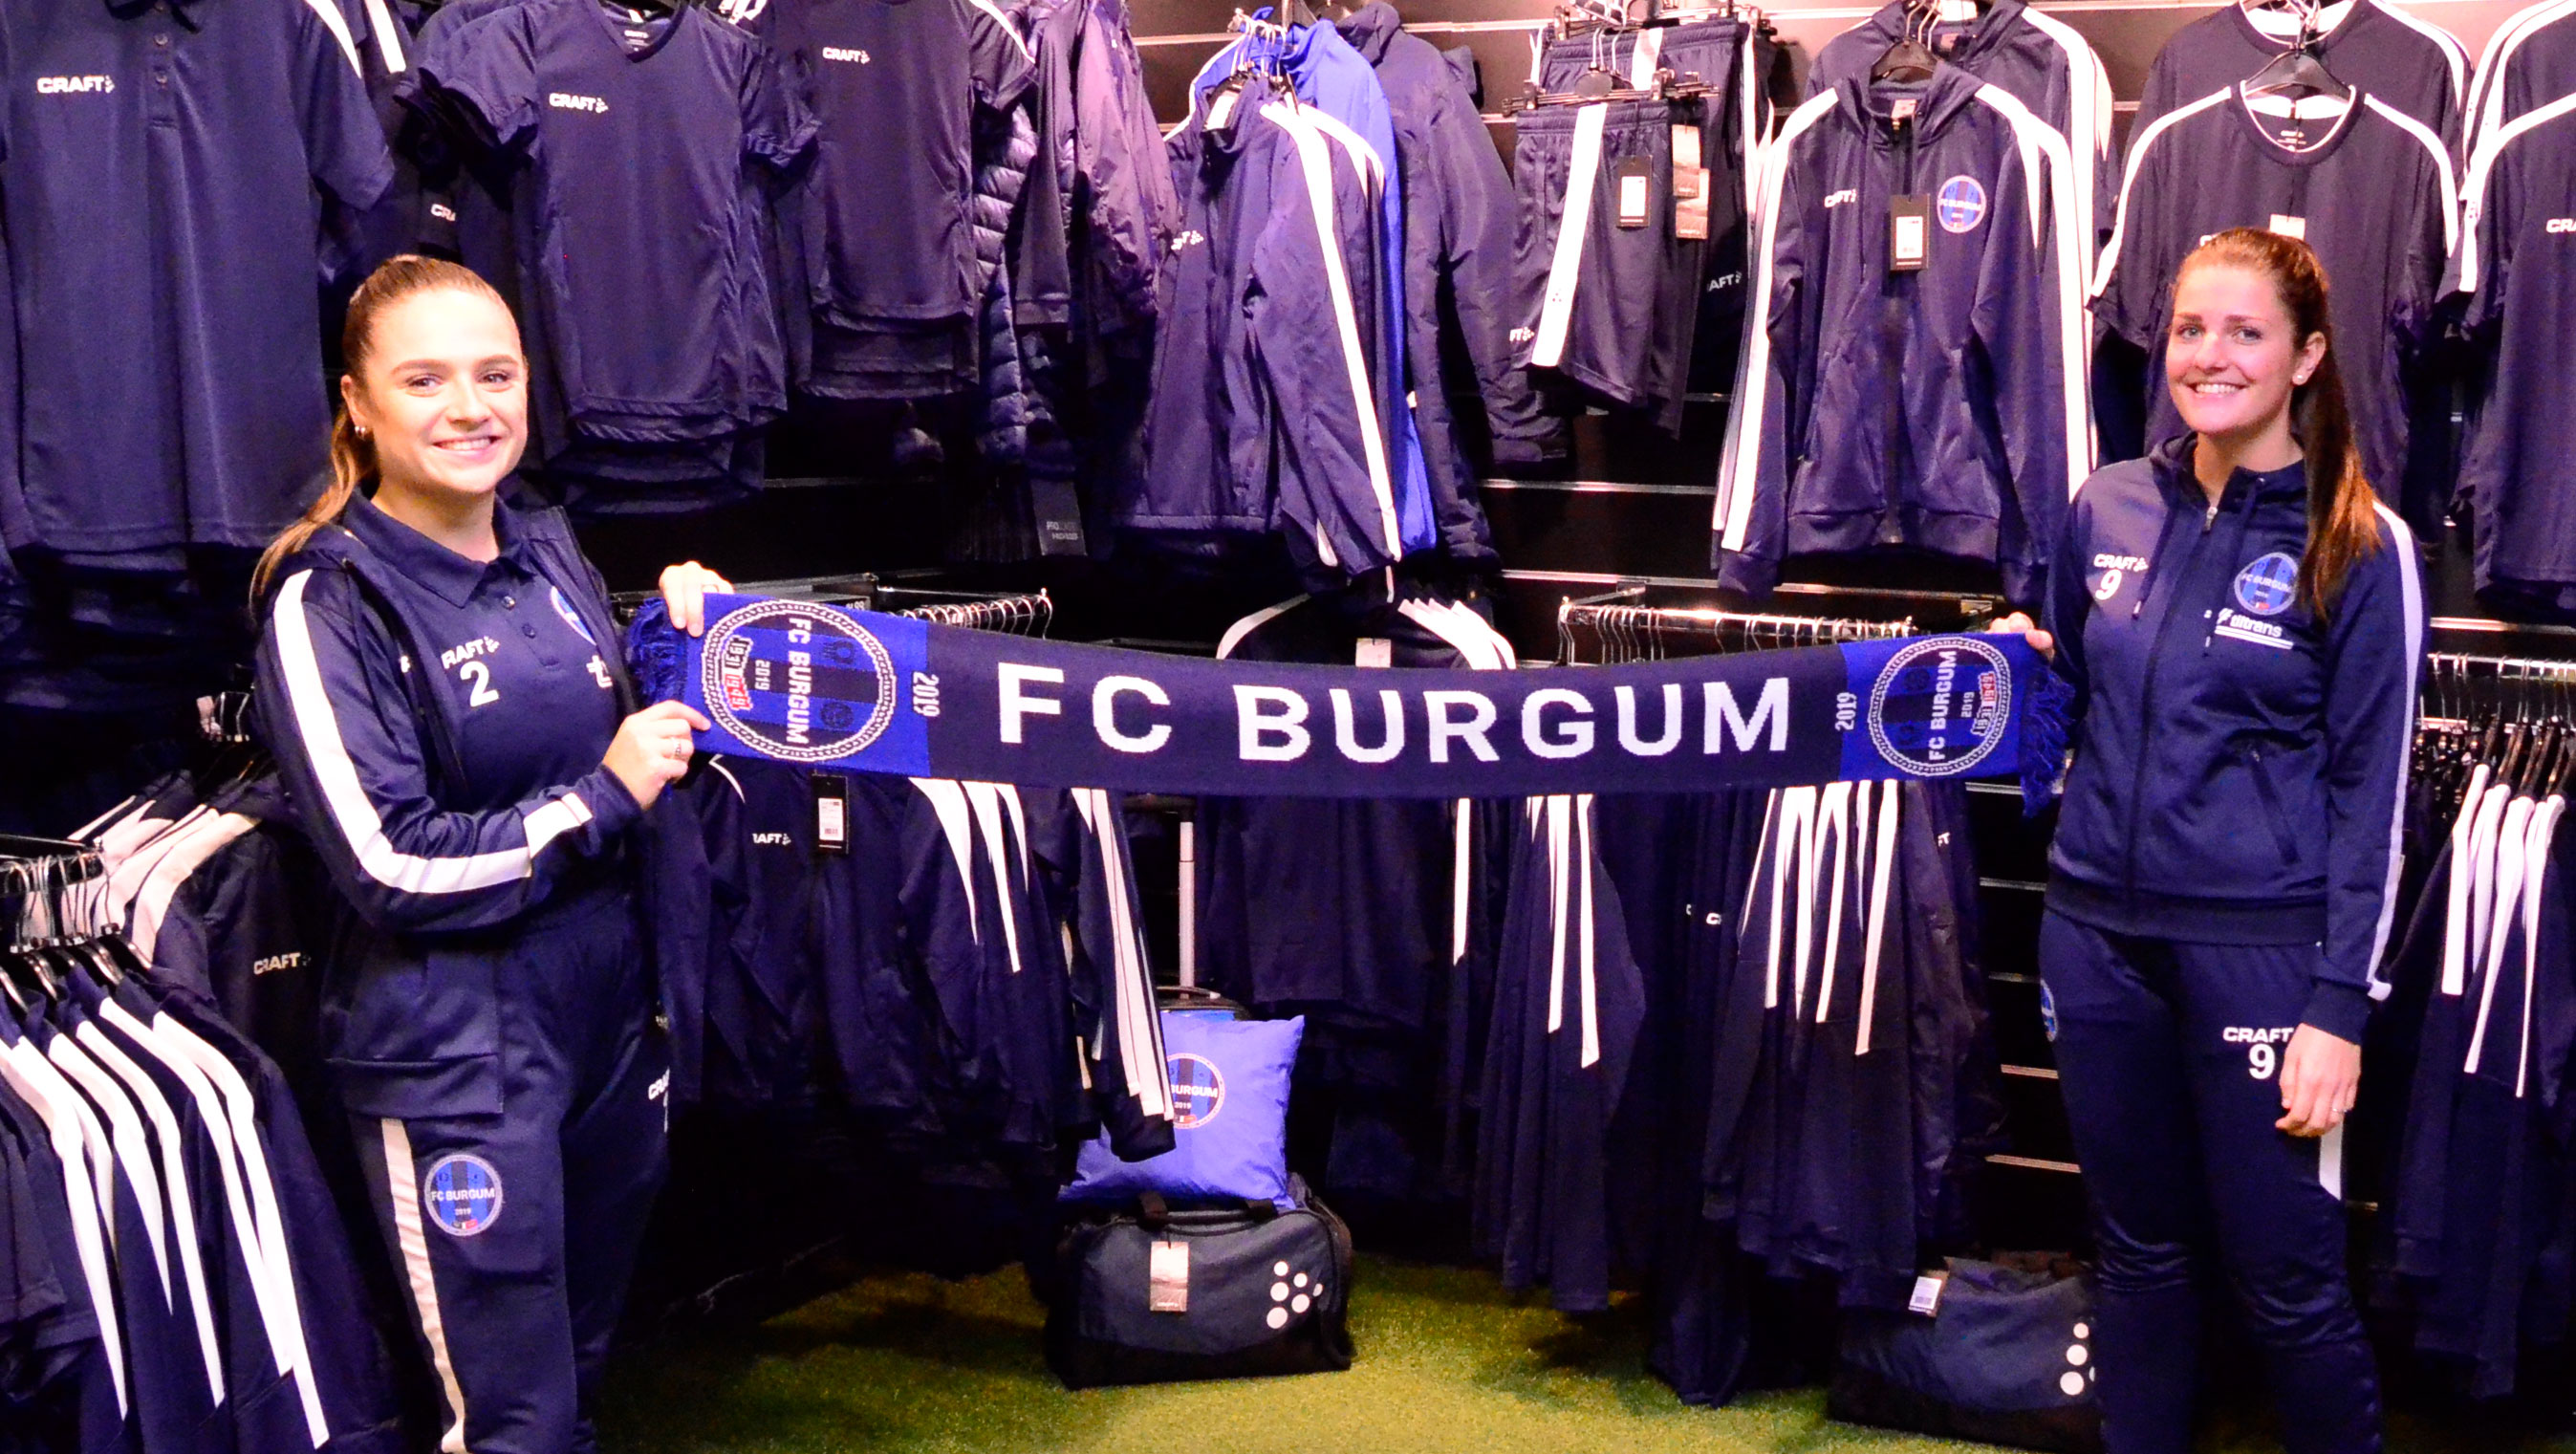 FC Burgum-sjaal bij aanschaf nieuwe voetbalschoenen